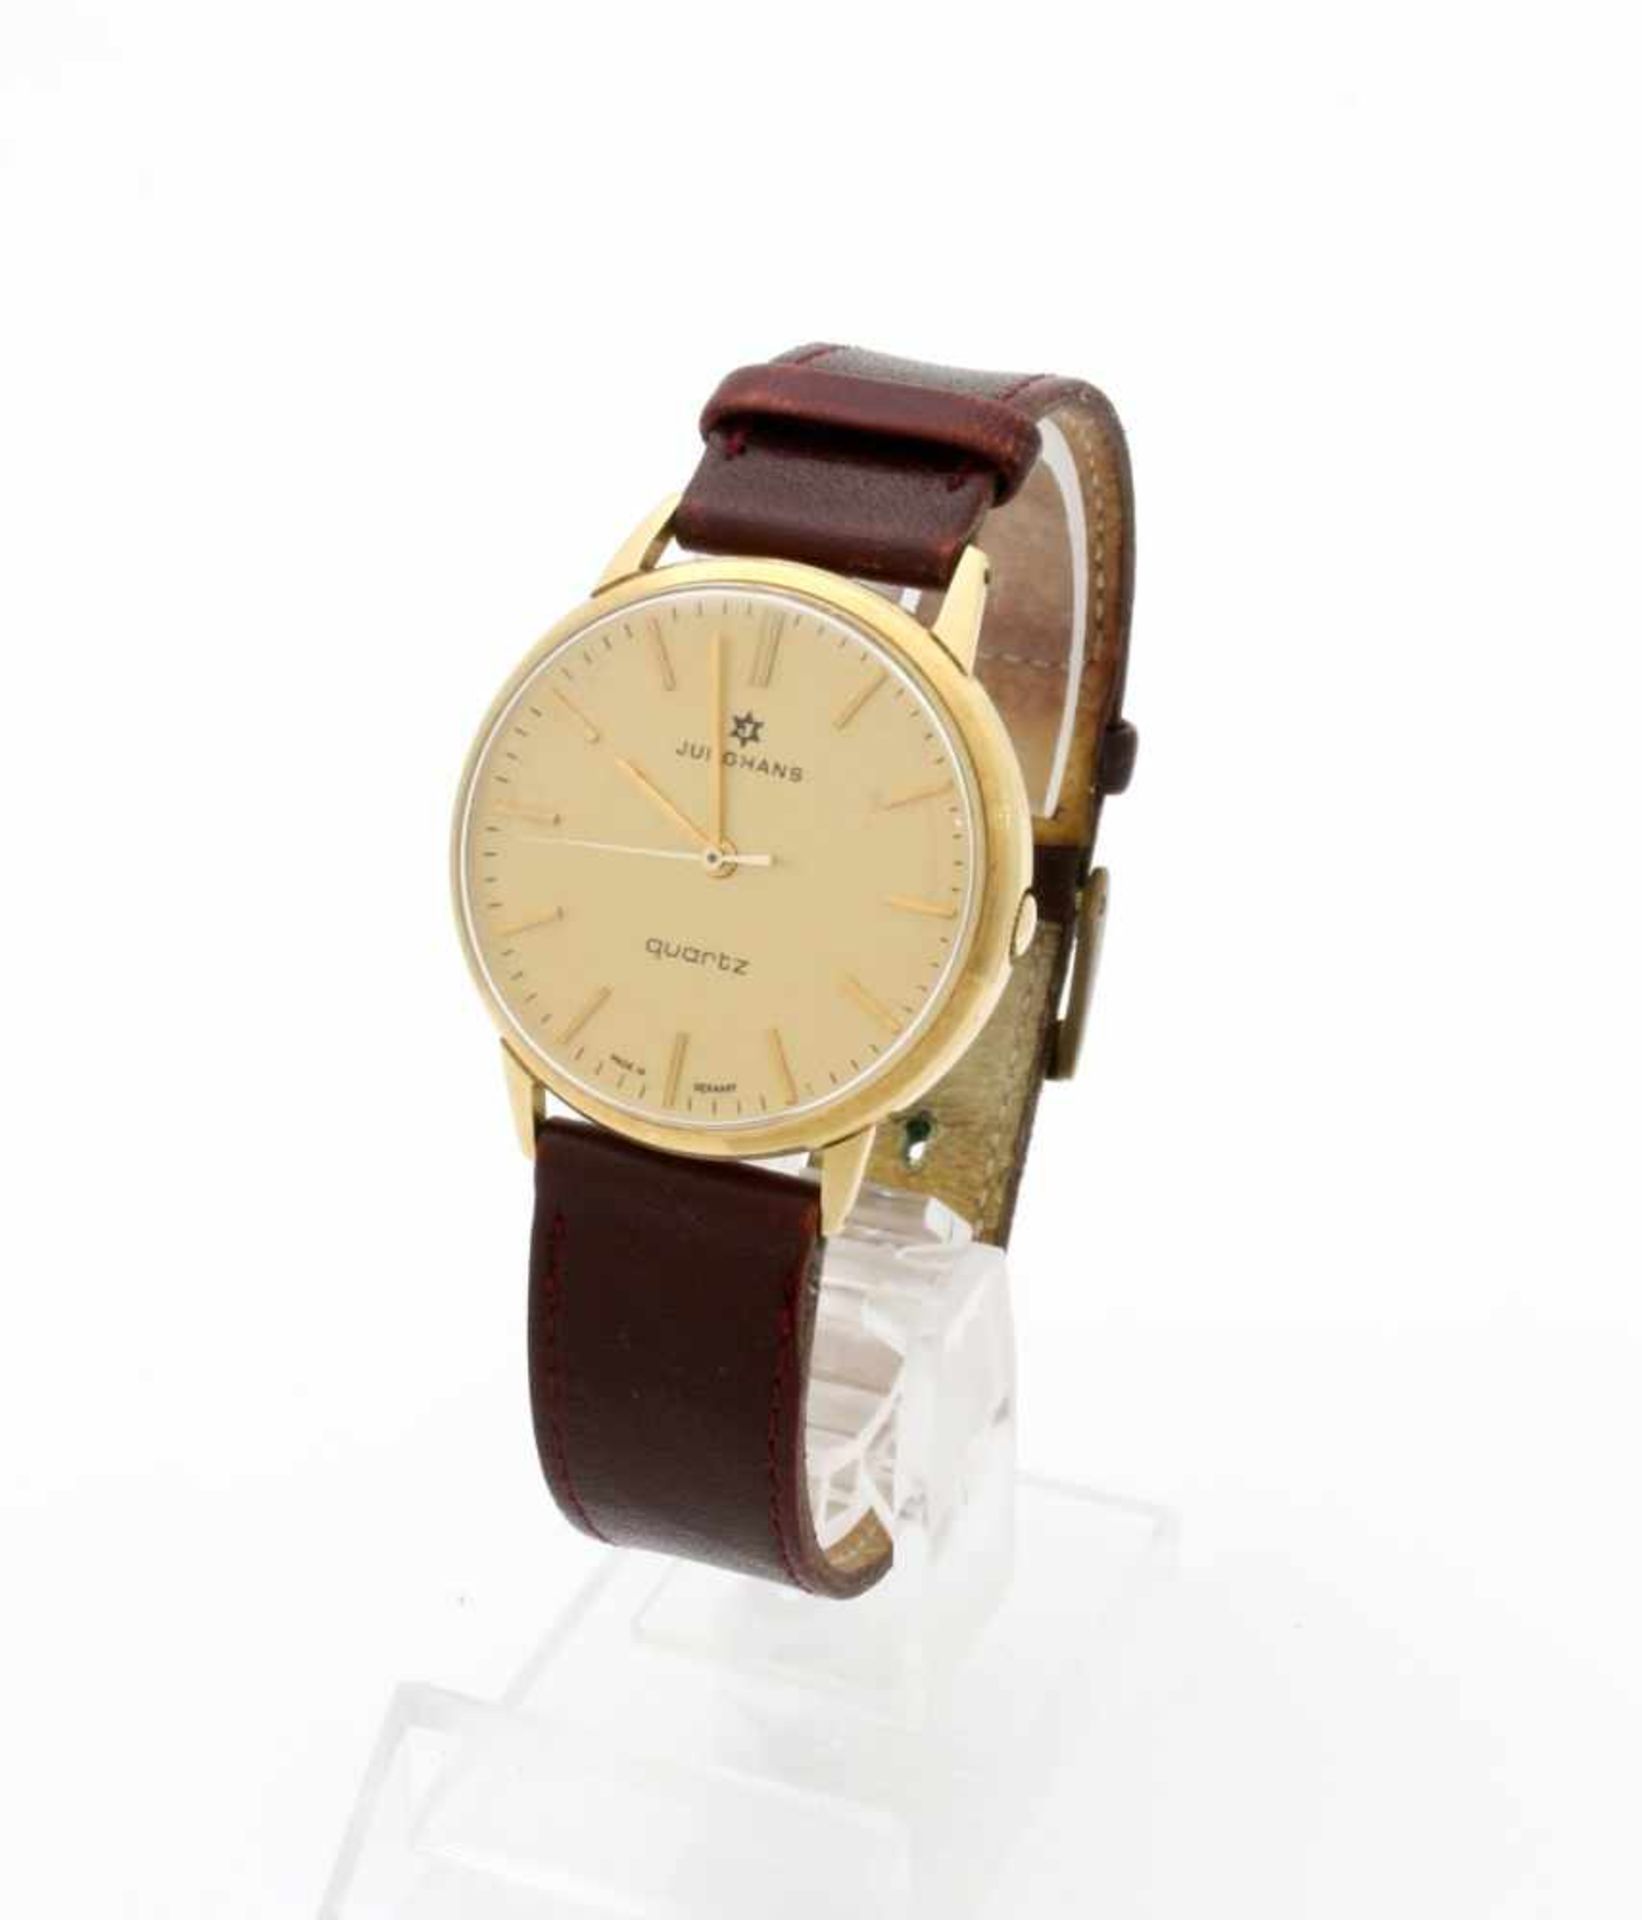 Goldene Armbanduhr Junghans 70er Jahre Quarzwerk, Ref. 667.01, Gehäuse GG 585, rückseitig Widmung, Ø - Bild 3 aus 4